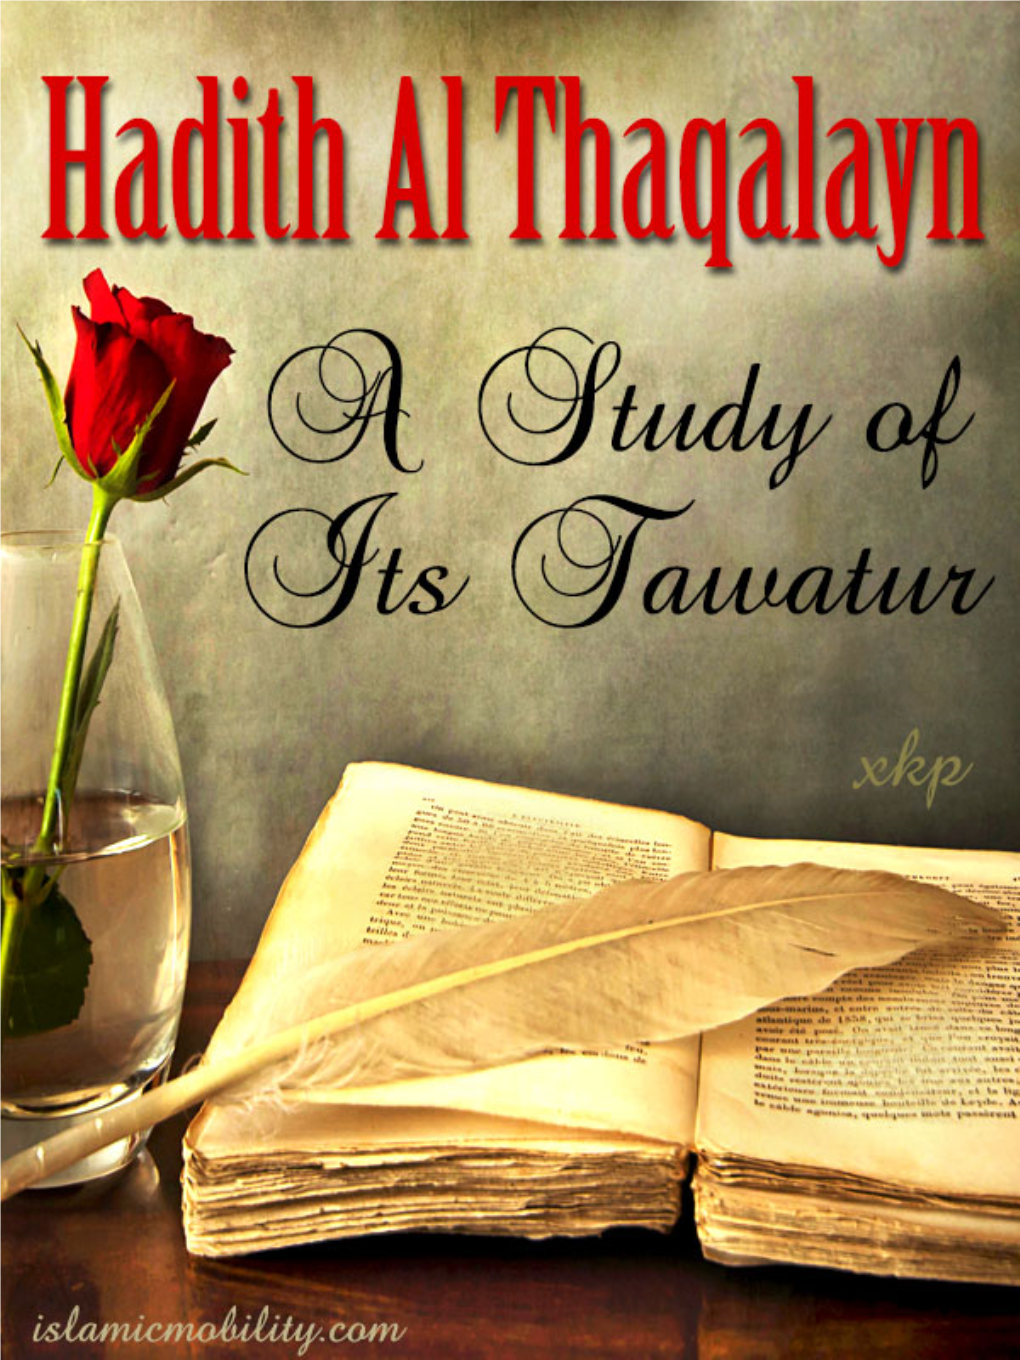 Hadith Al Thaqalayn